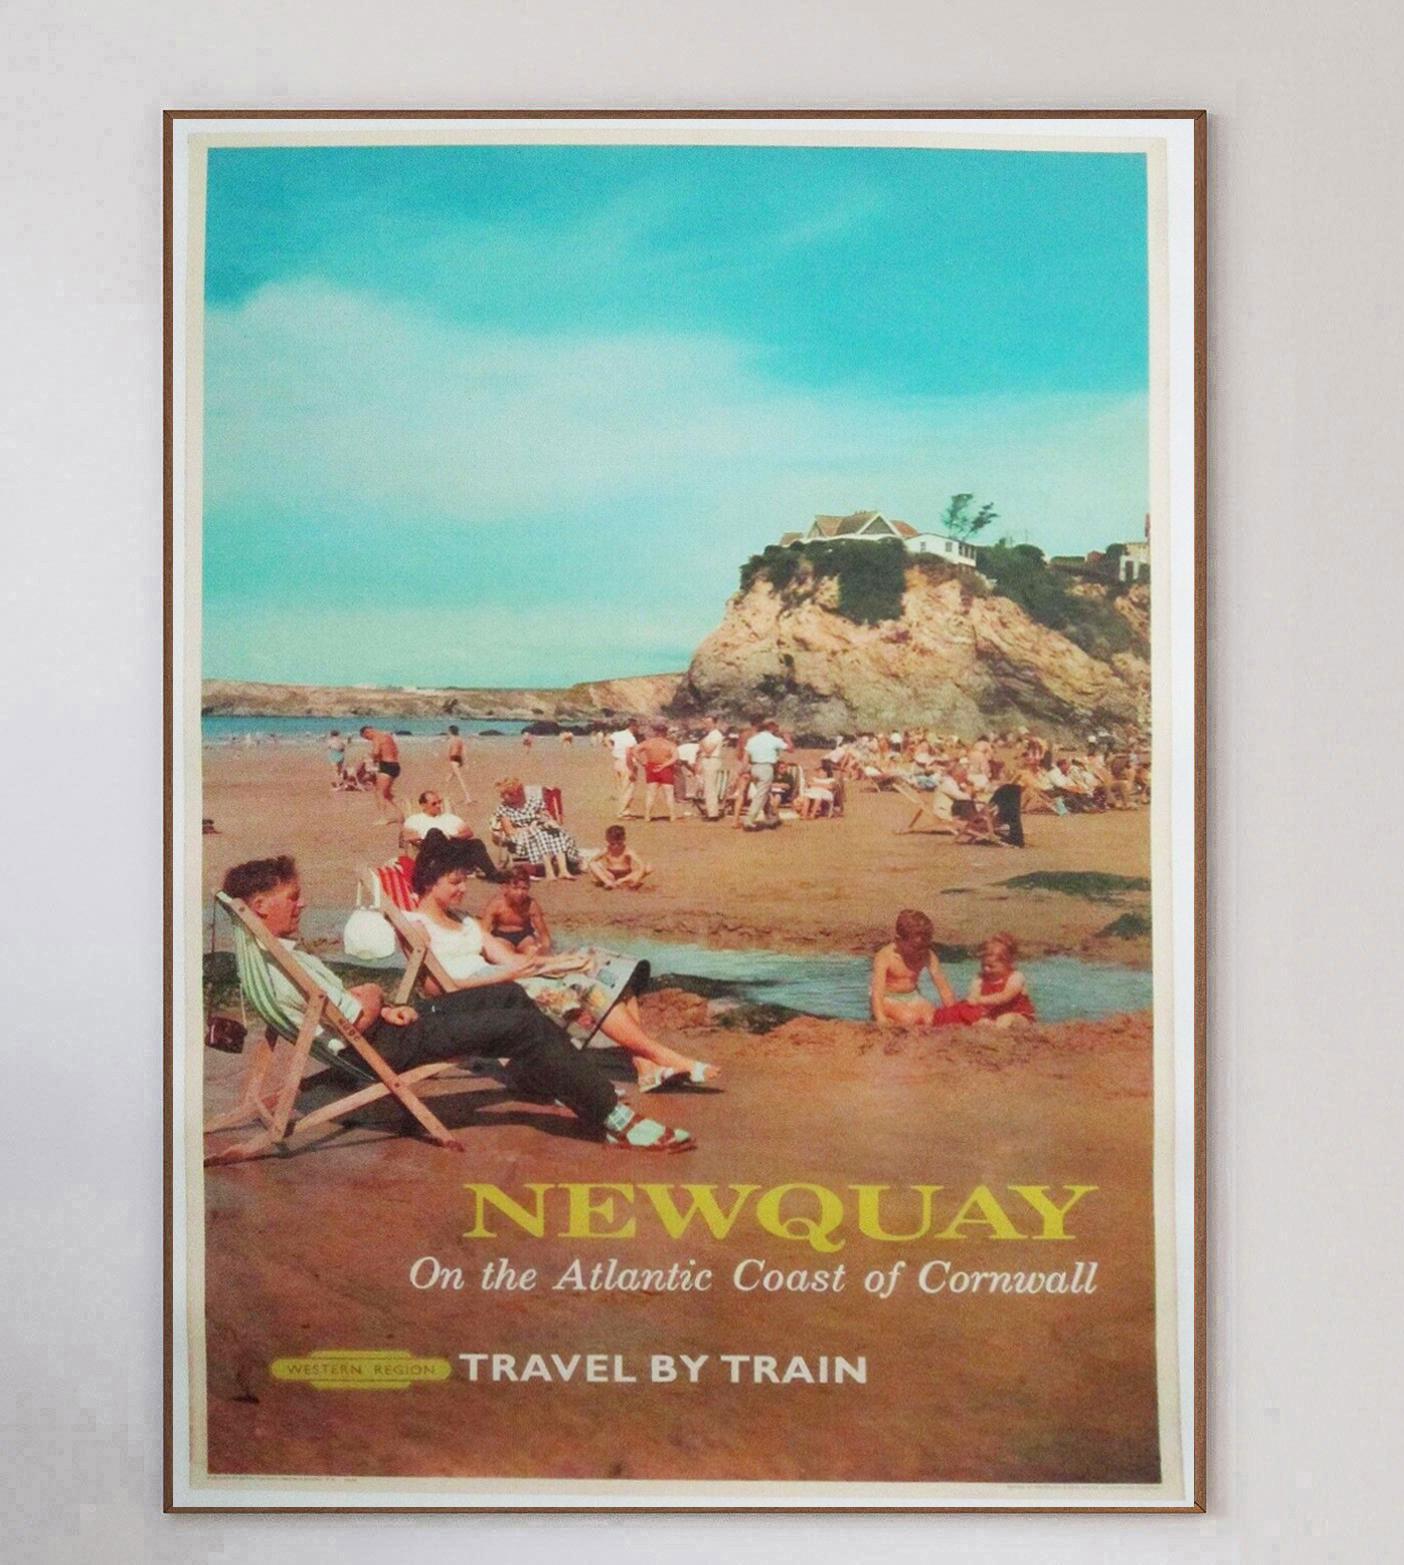 Magnifique affiche rare de 1962, produite par British Railway pour promouvoir les lignes de la région Ouest vers Newquay en Cornouailles, Angleterre. Avec une magnifique image de familles profitant des belles plages de la région, l'article indique